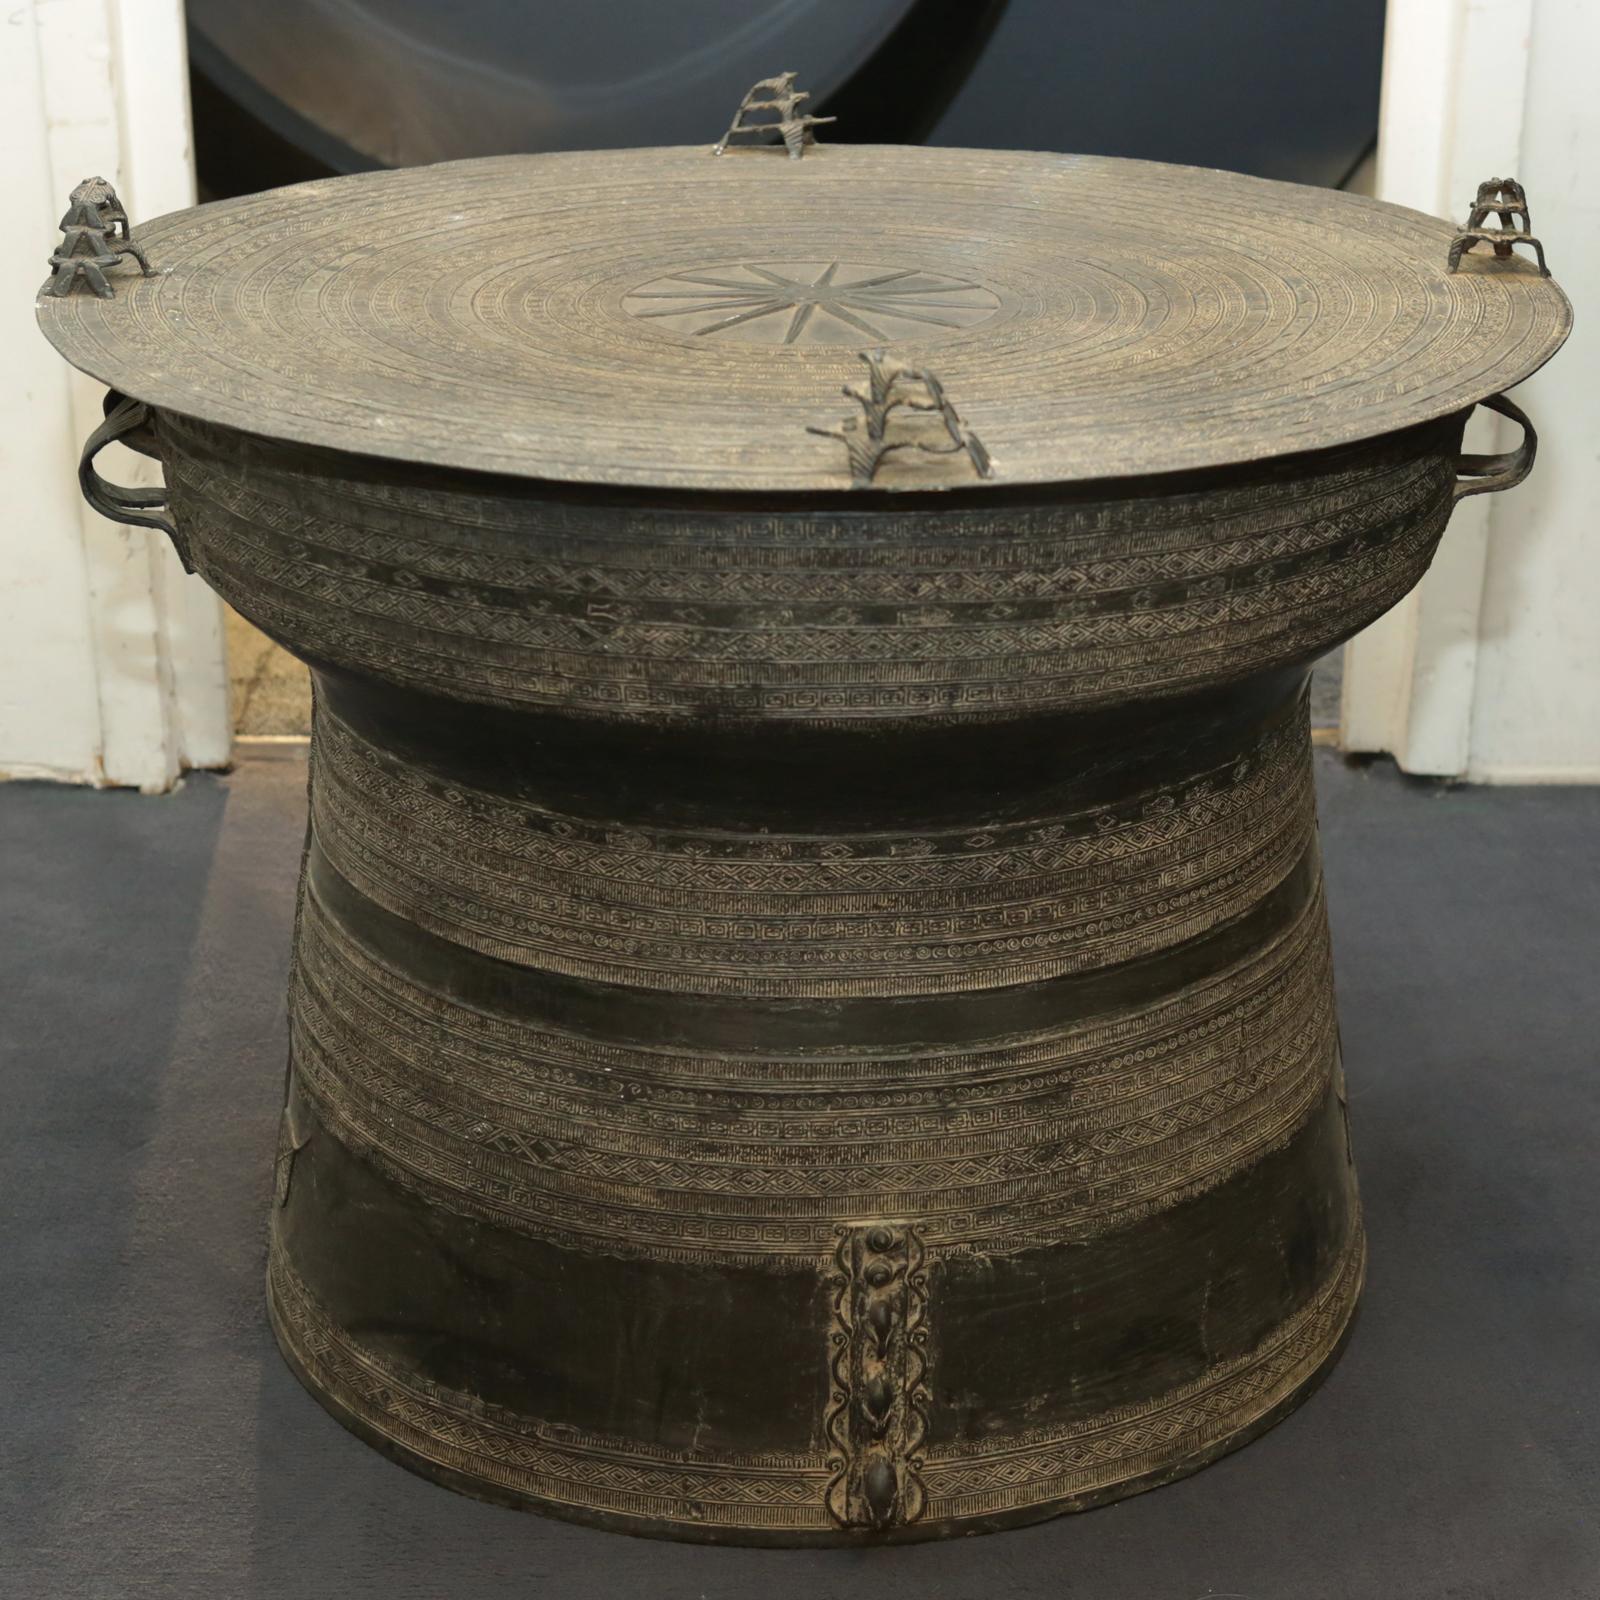 Table d'appoint rain drum dark en bronze massif
en finition foncée.
Mesures : Ø71 x H 50cm, prix : 9900,00€.
Egalement disponible en set de 2, prix : 19800,00€.